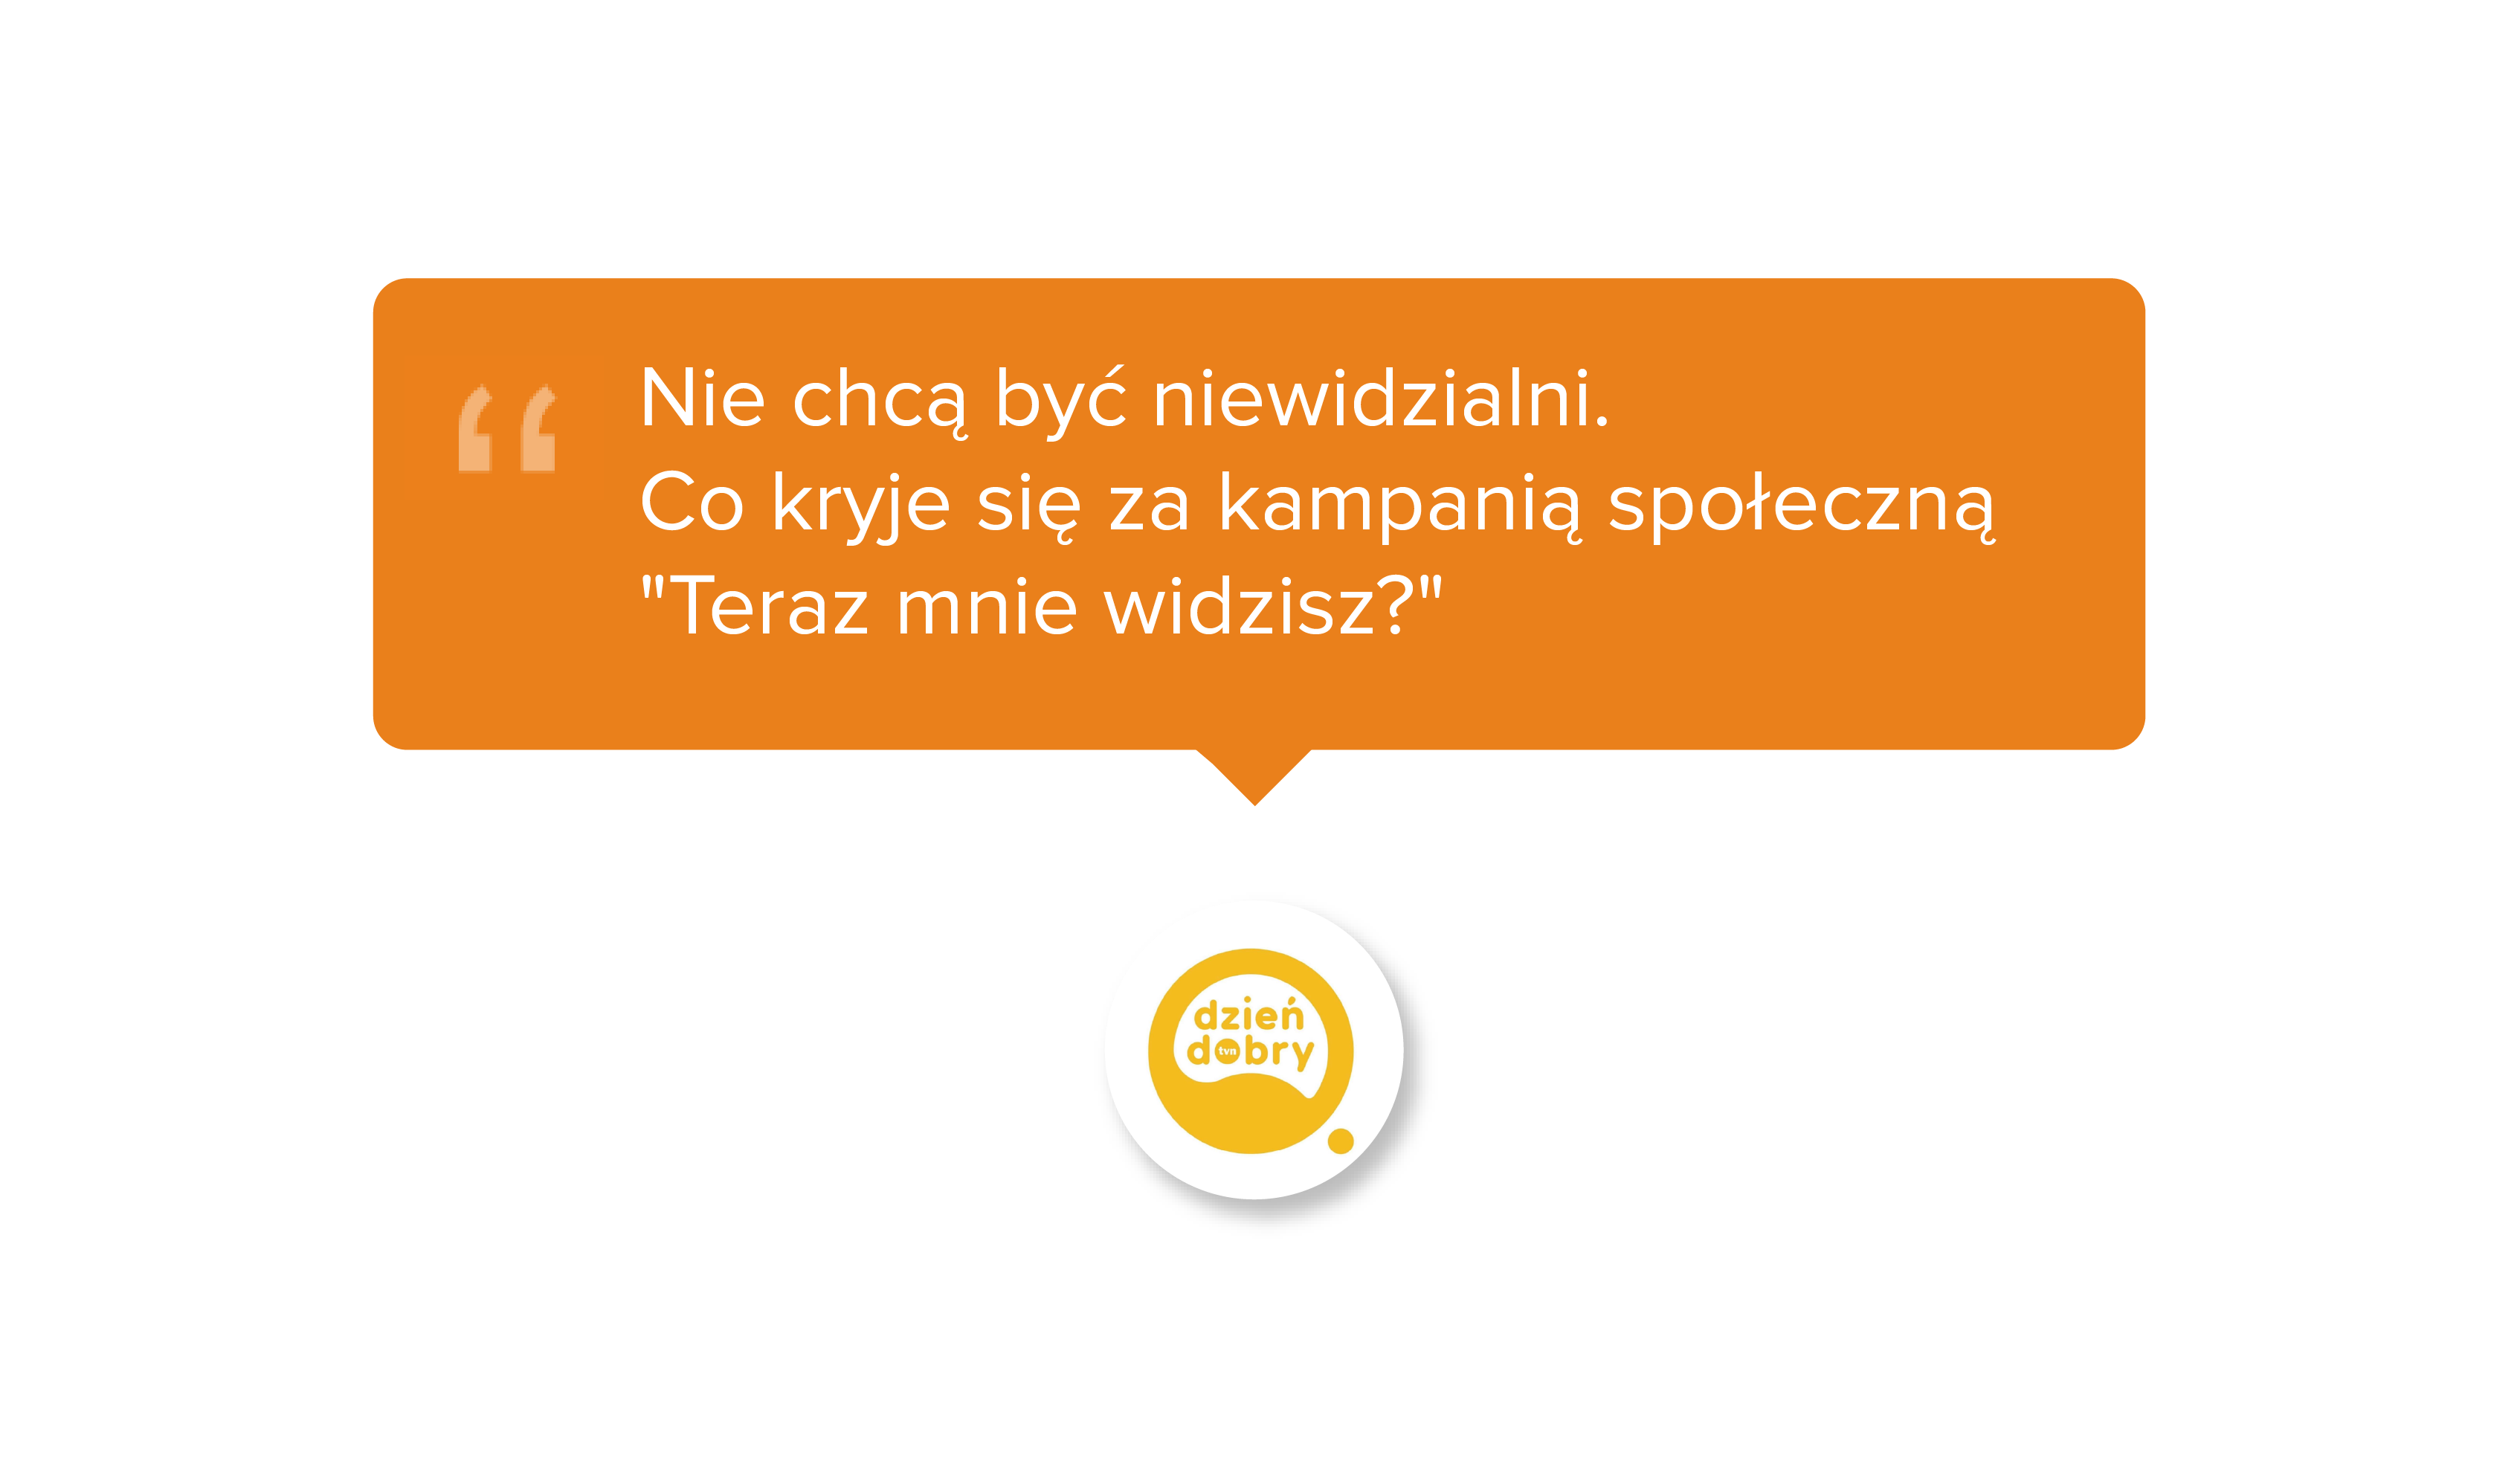 Dzień dobry TVN.pl. Nie chcą być niewidzialni. Co kryje się za kampanią społeczną 'Teraz mnie widzisz?'.